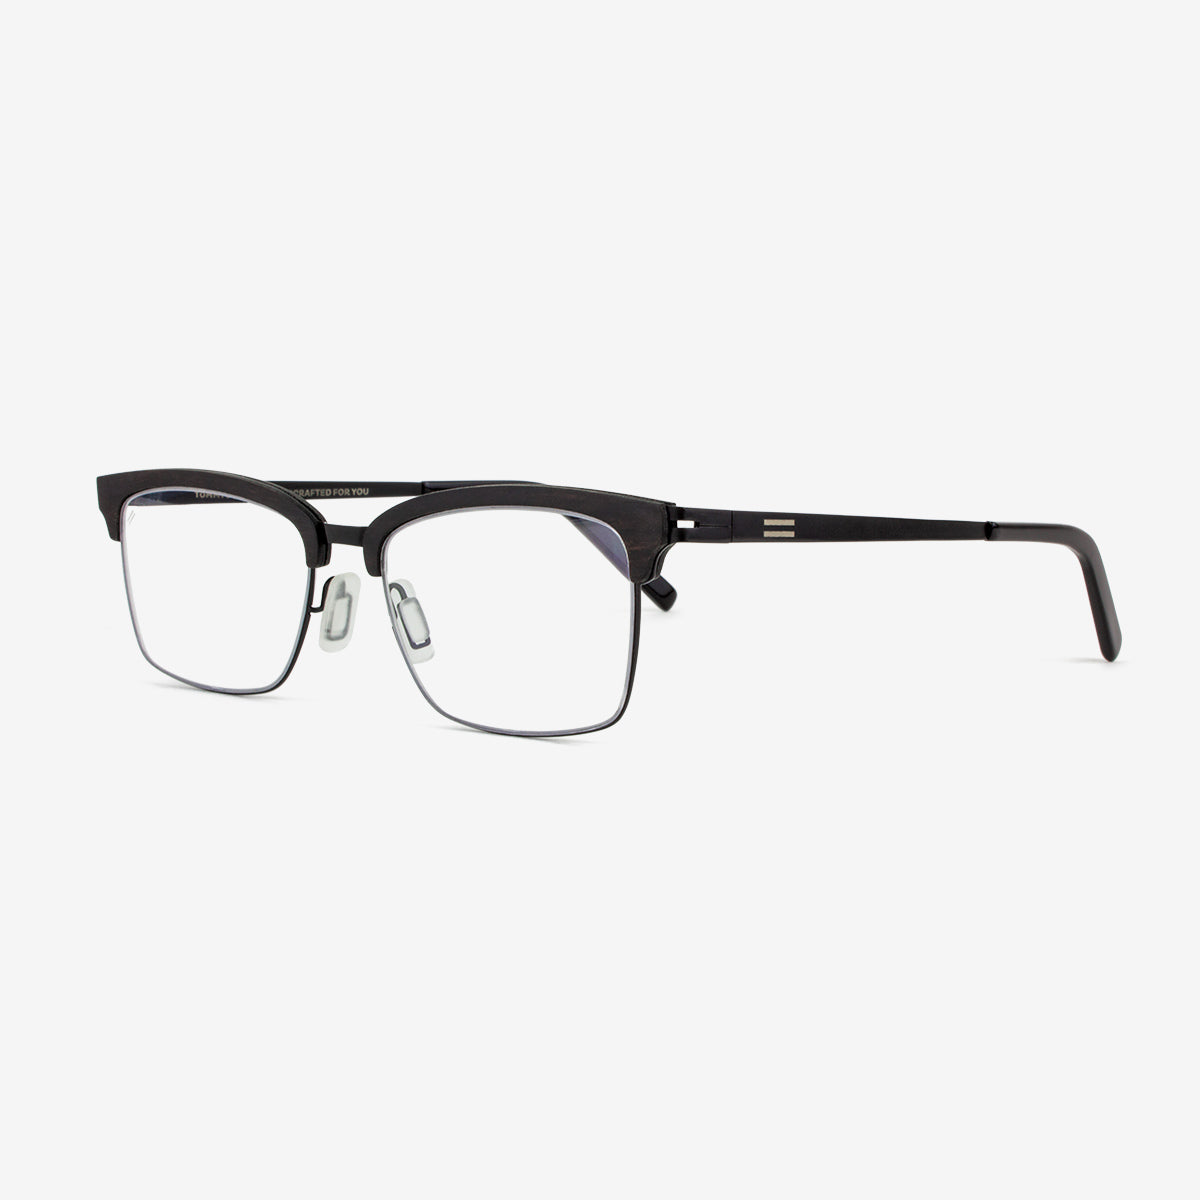 Stuart - Wood & Metal Eyeglasses